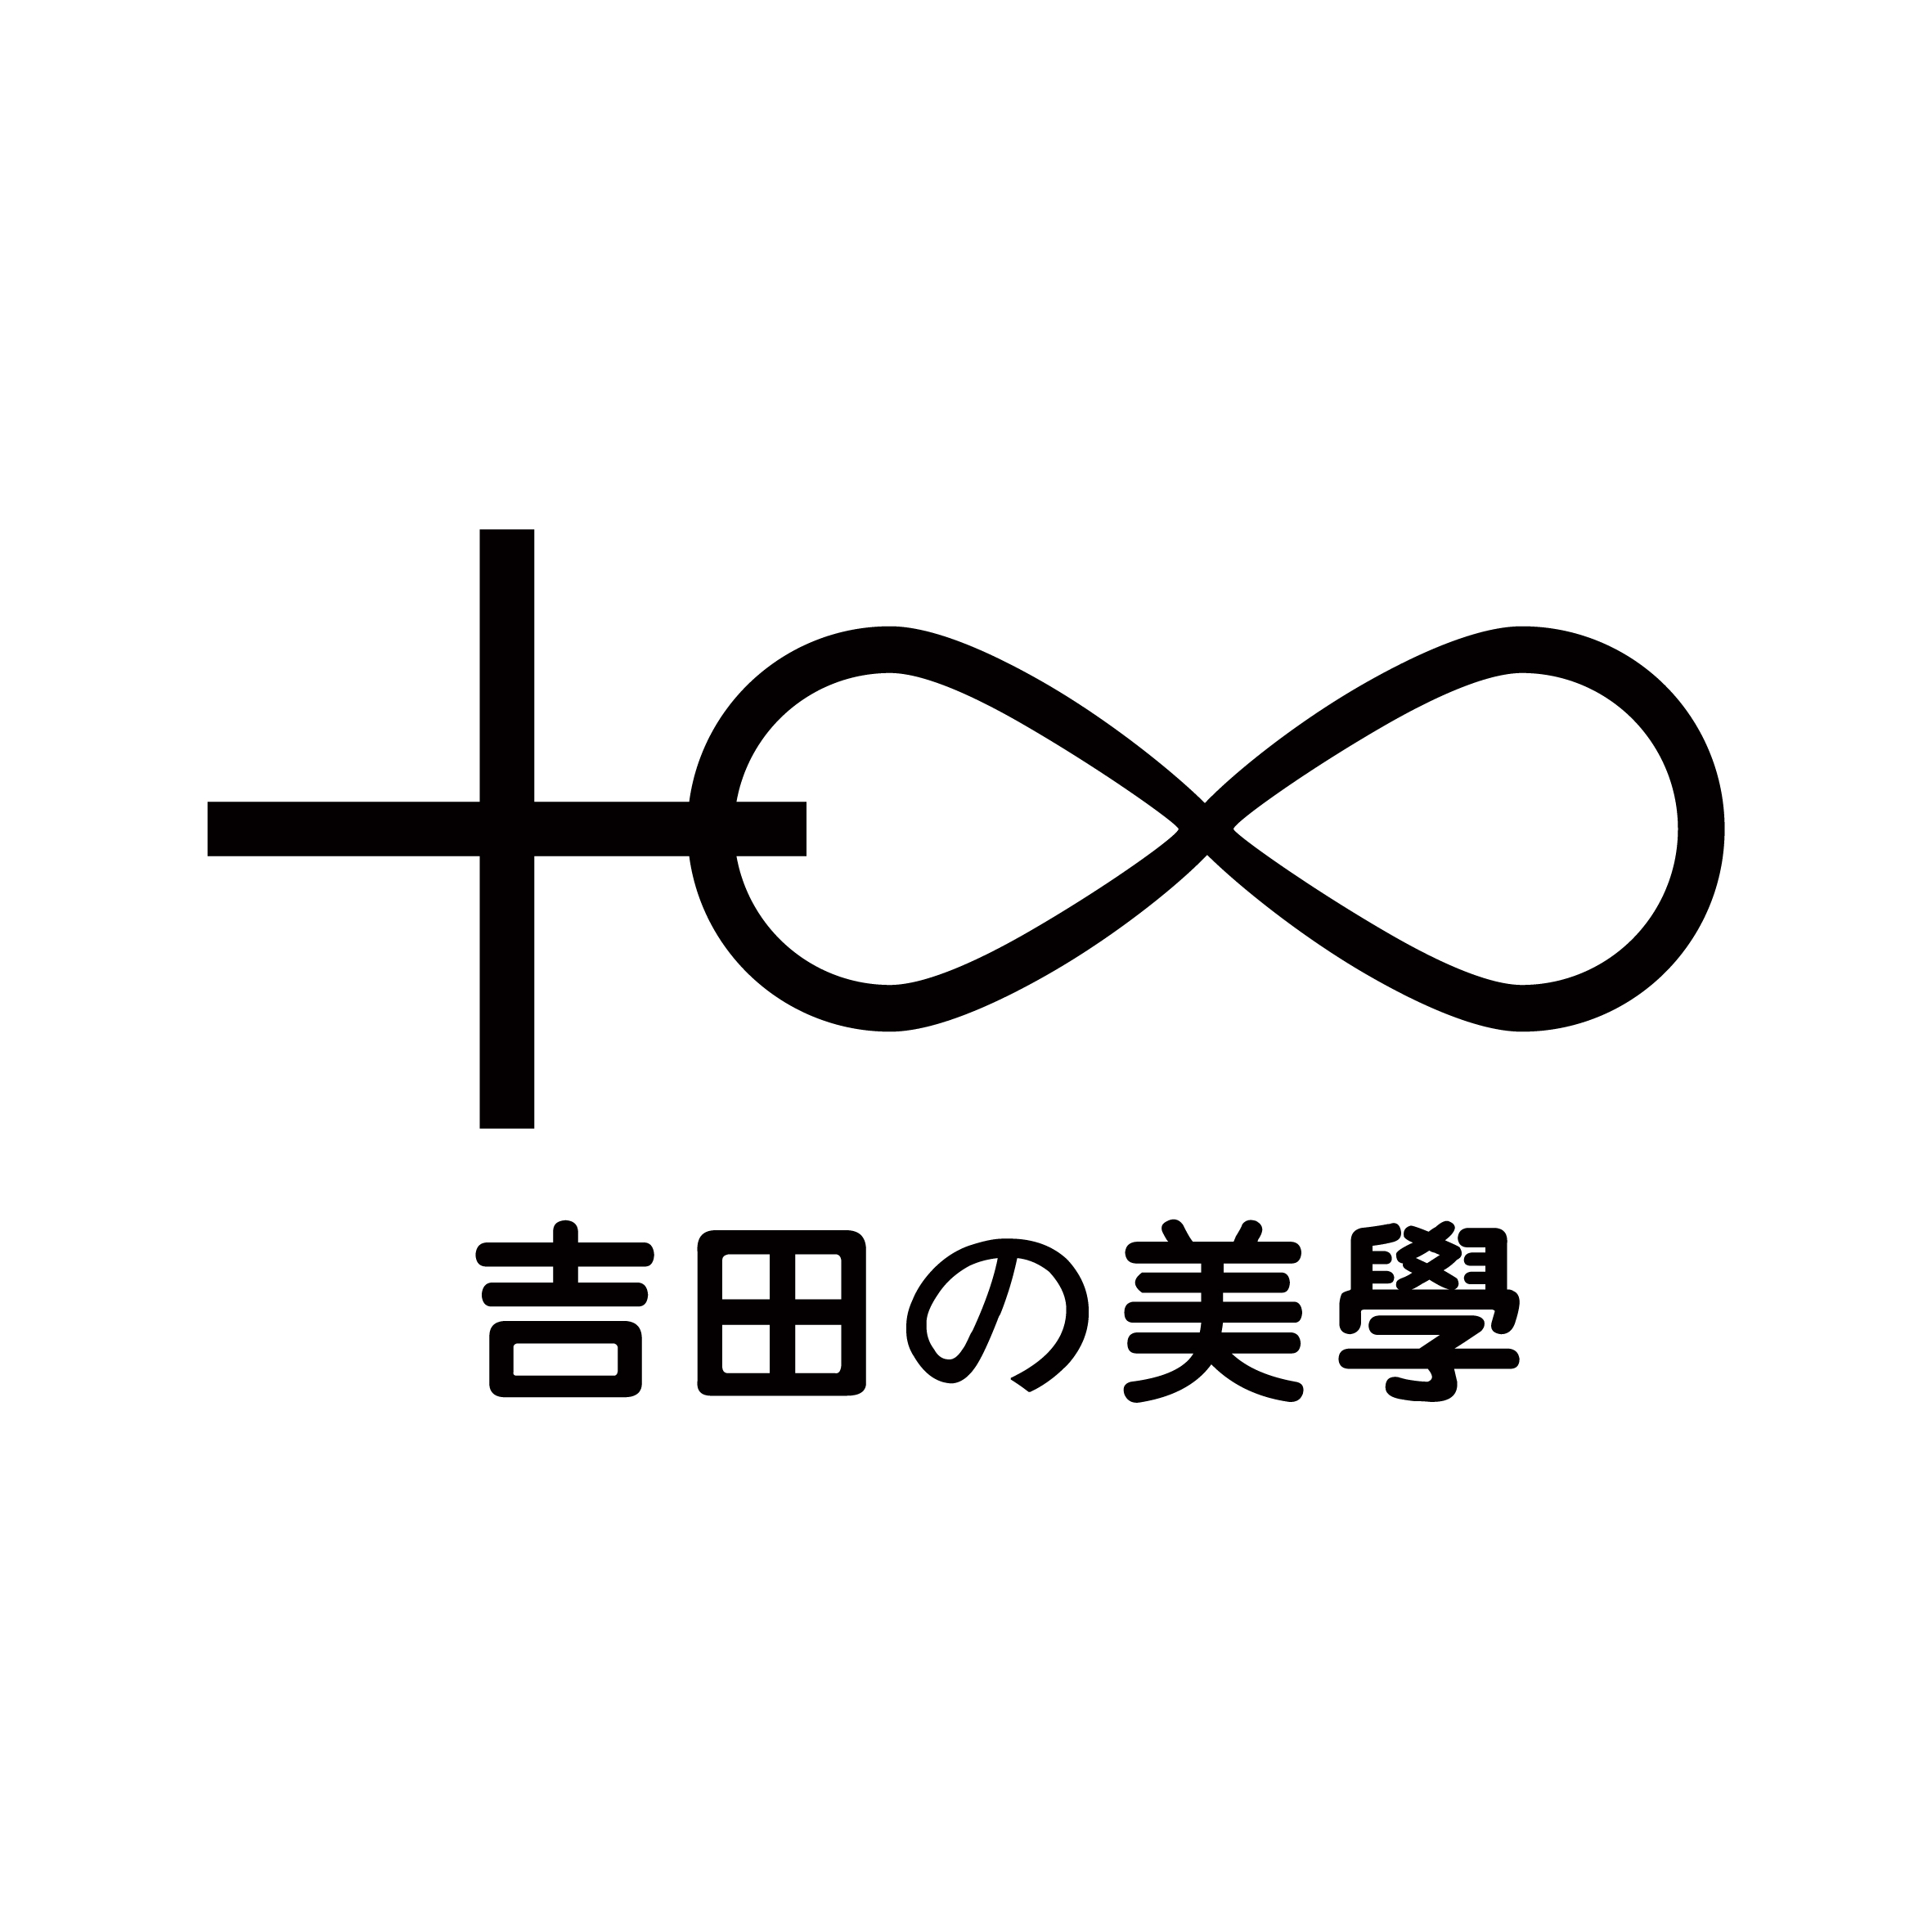 吉田美学形象设计艺术学校Logo